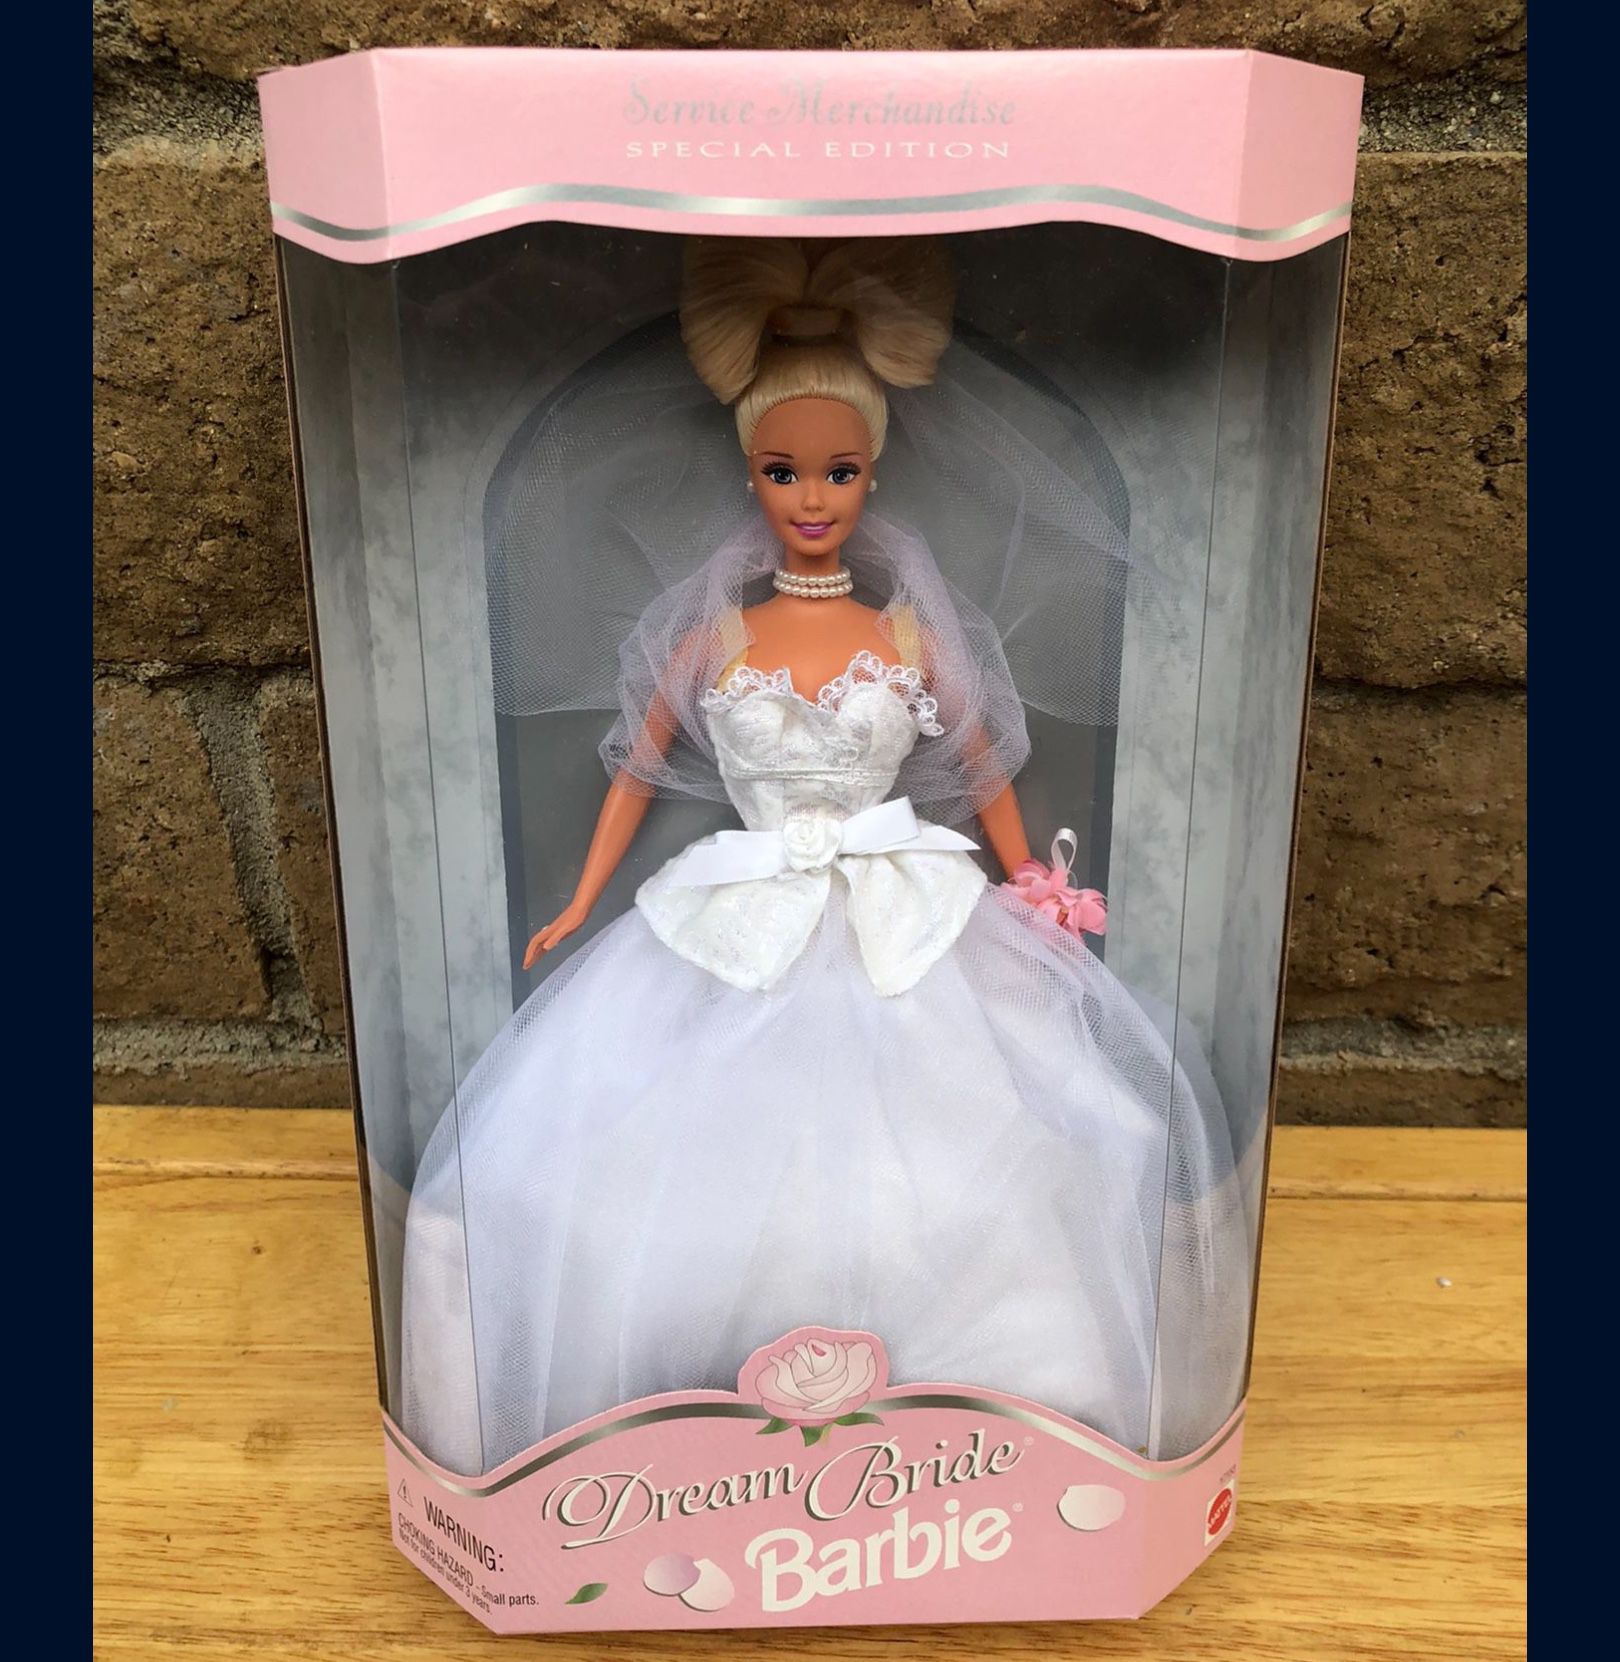  Dream Bride Barbie